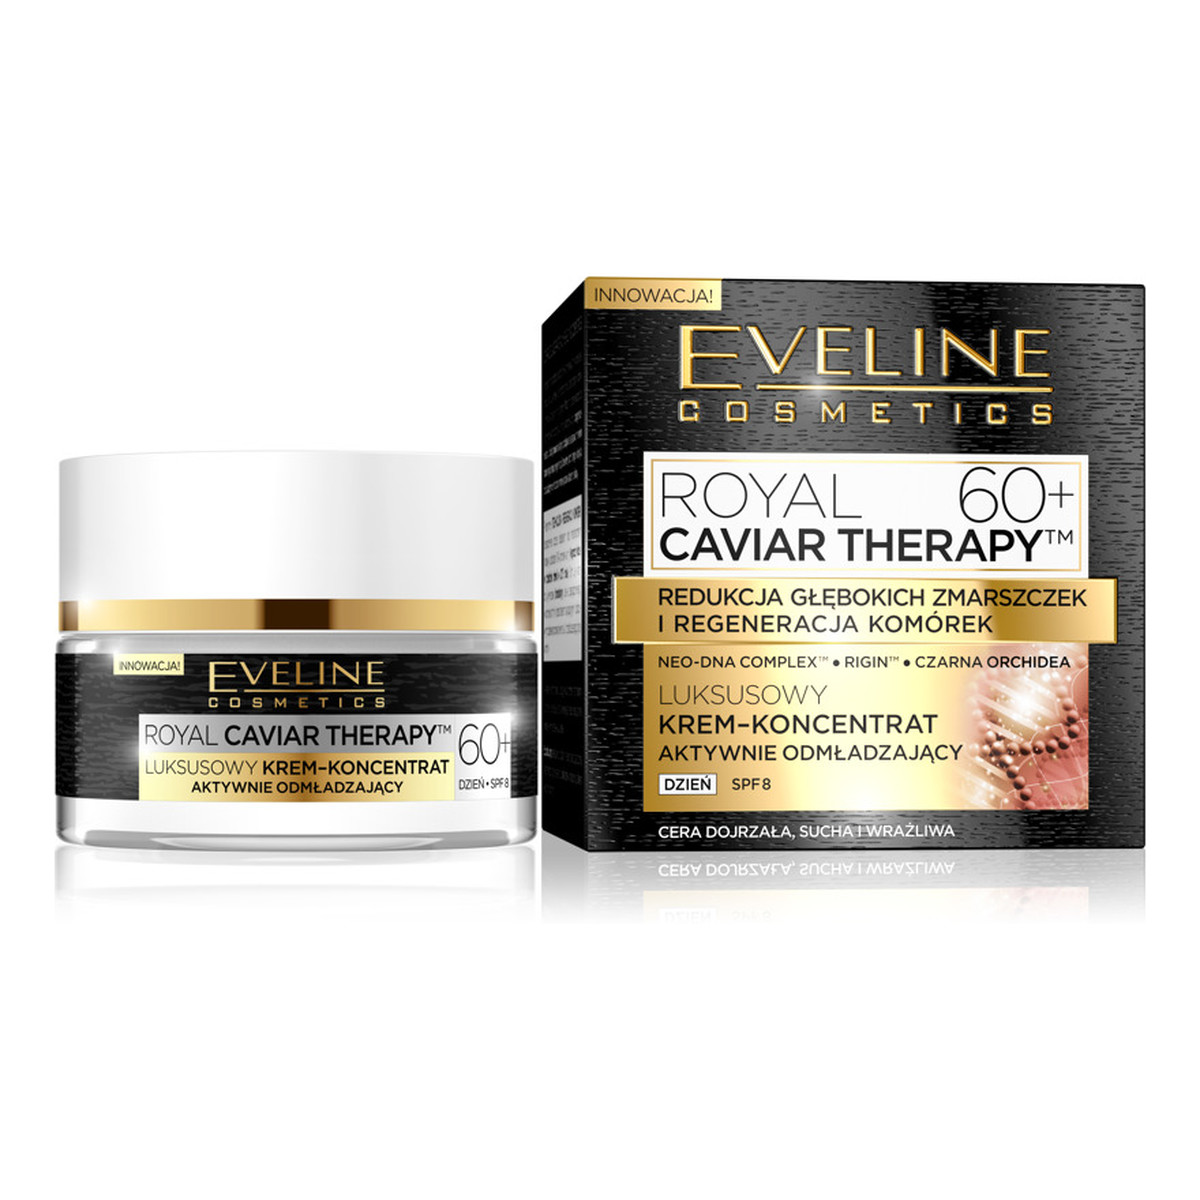 Eveline Royal caviar therapy 60+ krem-koncentrat aktywnie odmładzający na dzień 50ml